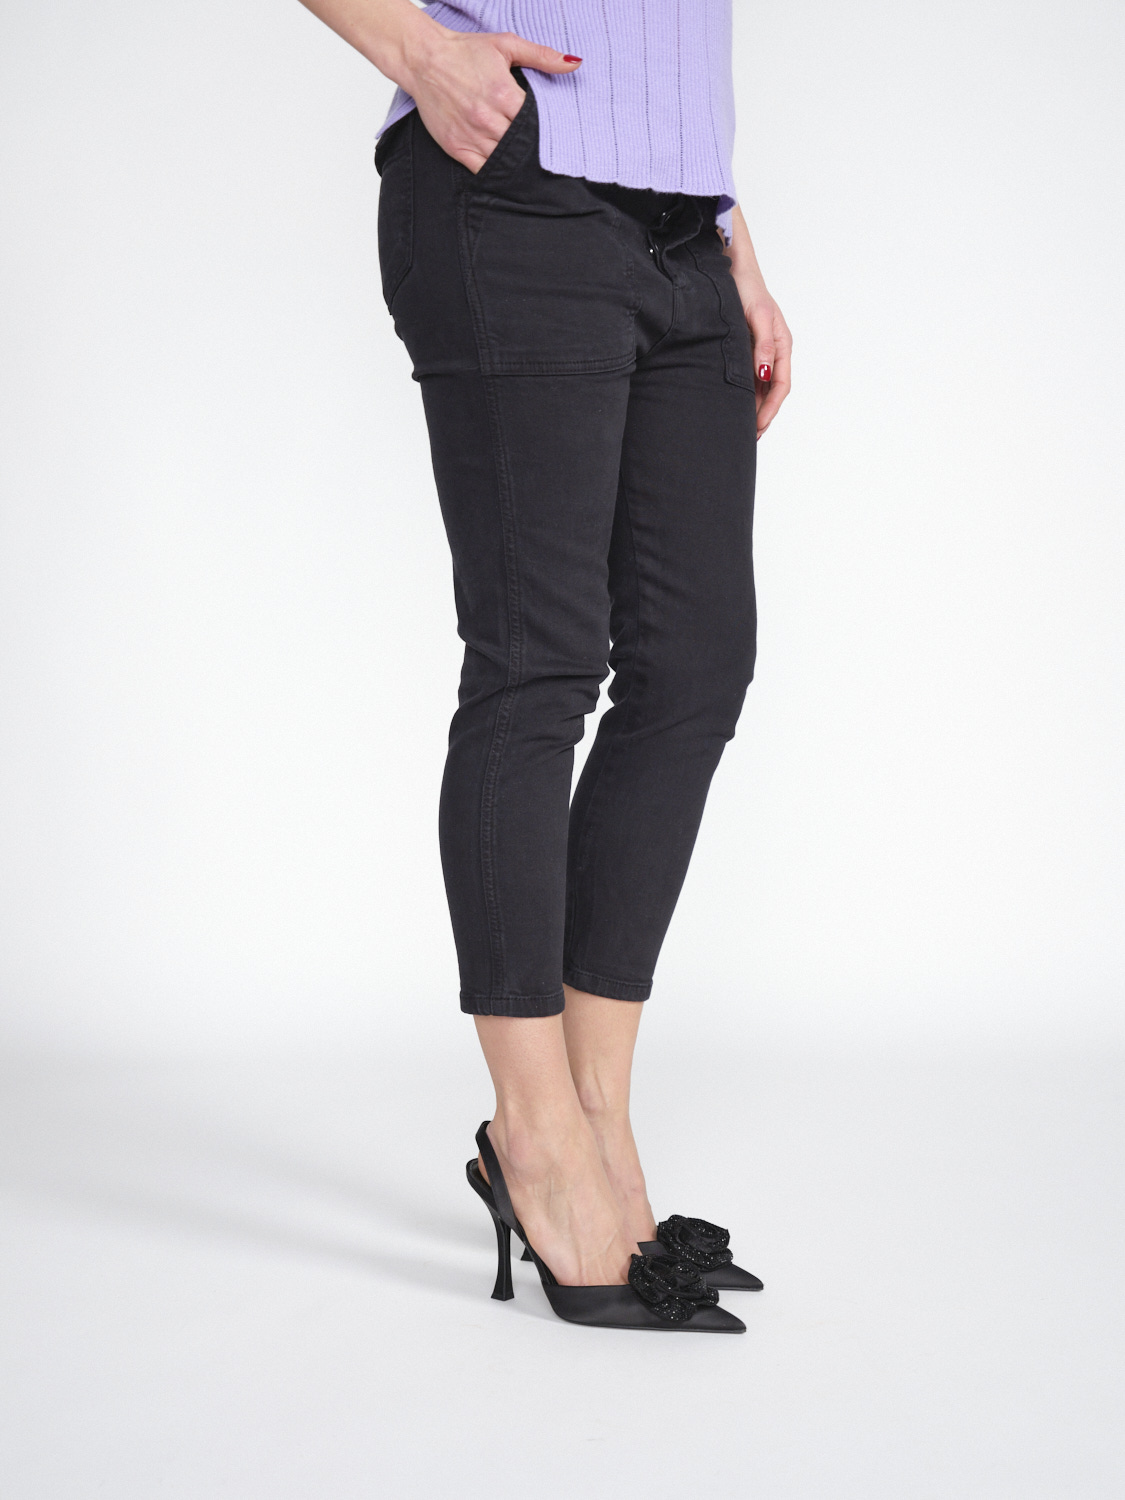 Gitta Banko Pants Harlow –Stretchige Dreiviertelhose aus Baumwolle   schwarz XS/S